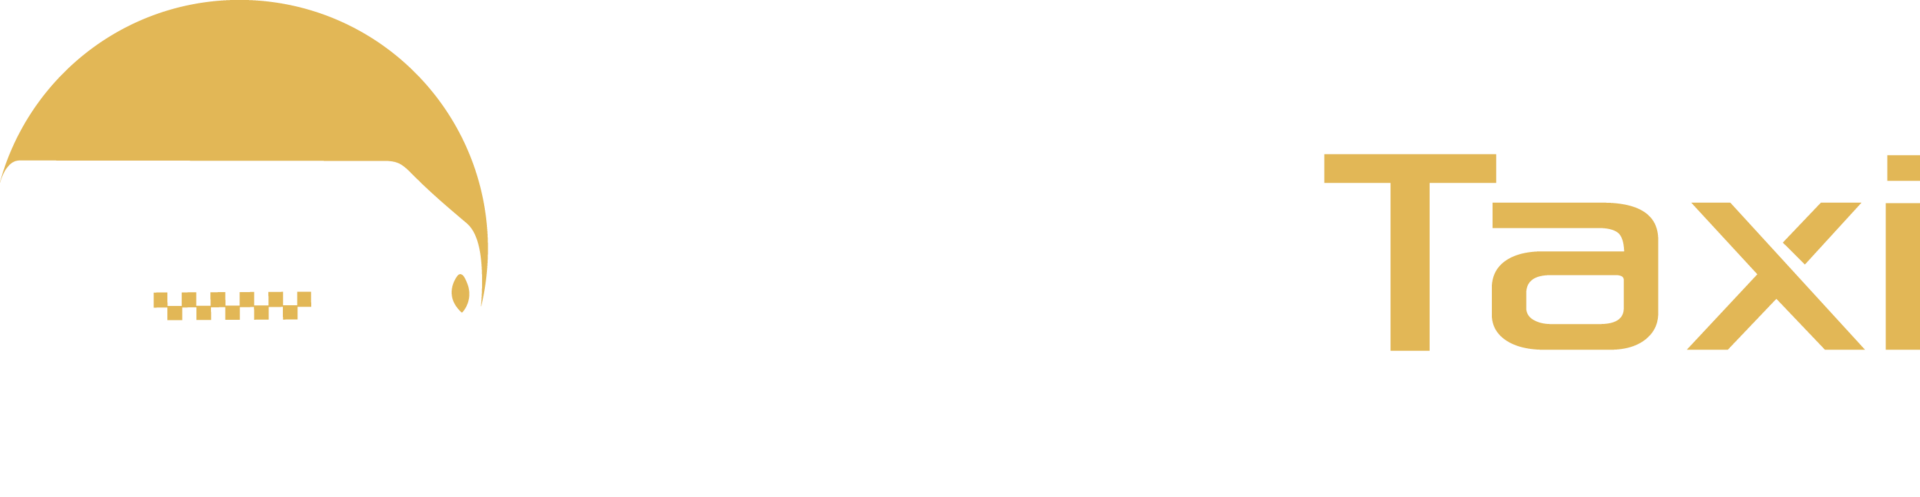 Maxitaxi